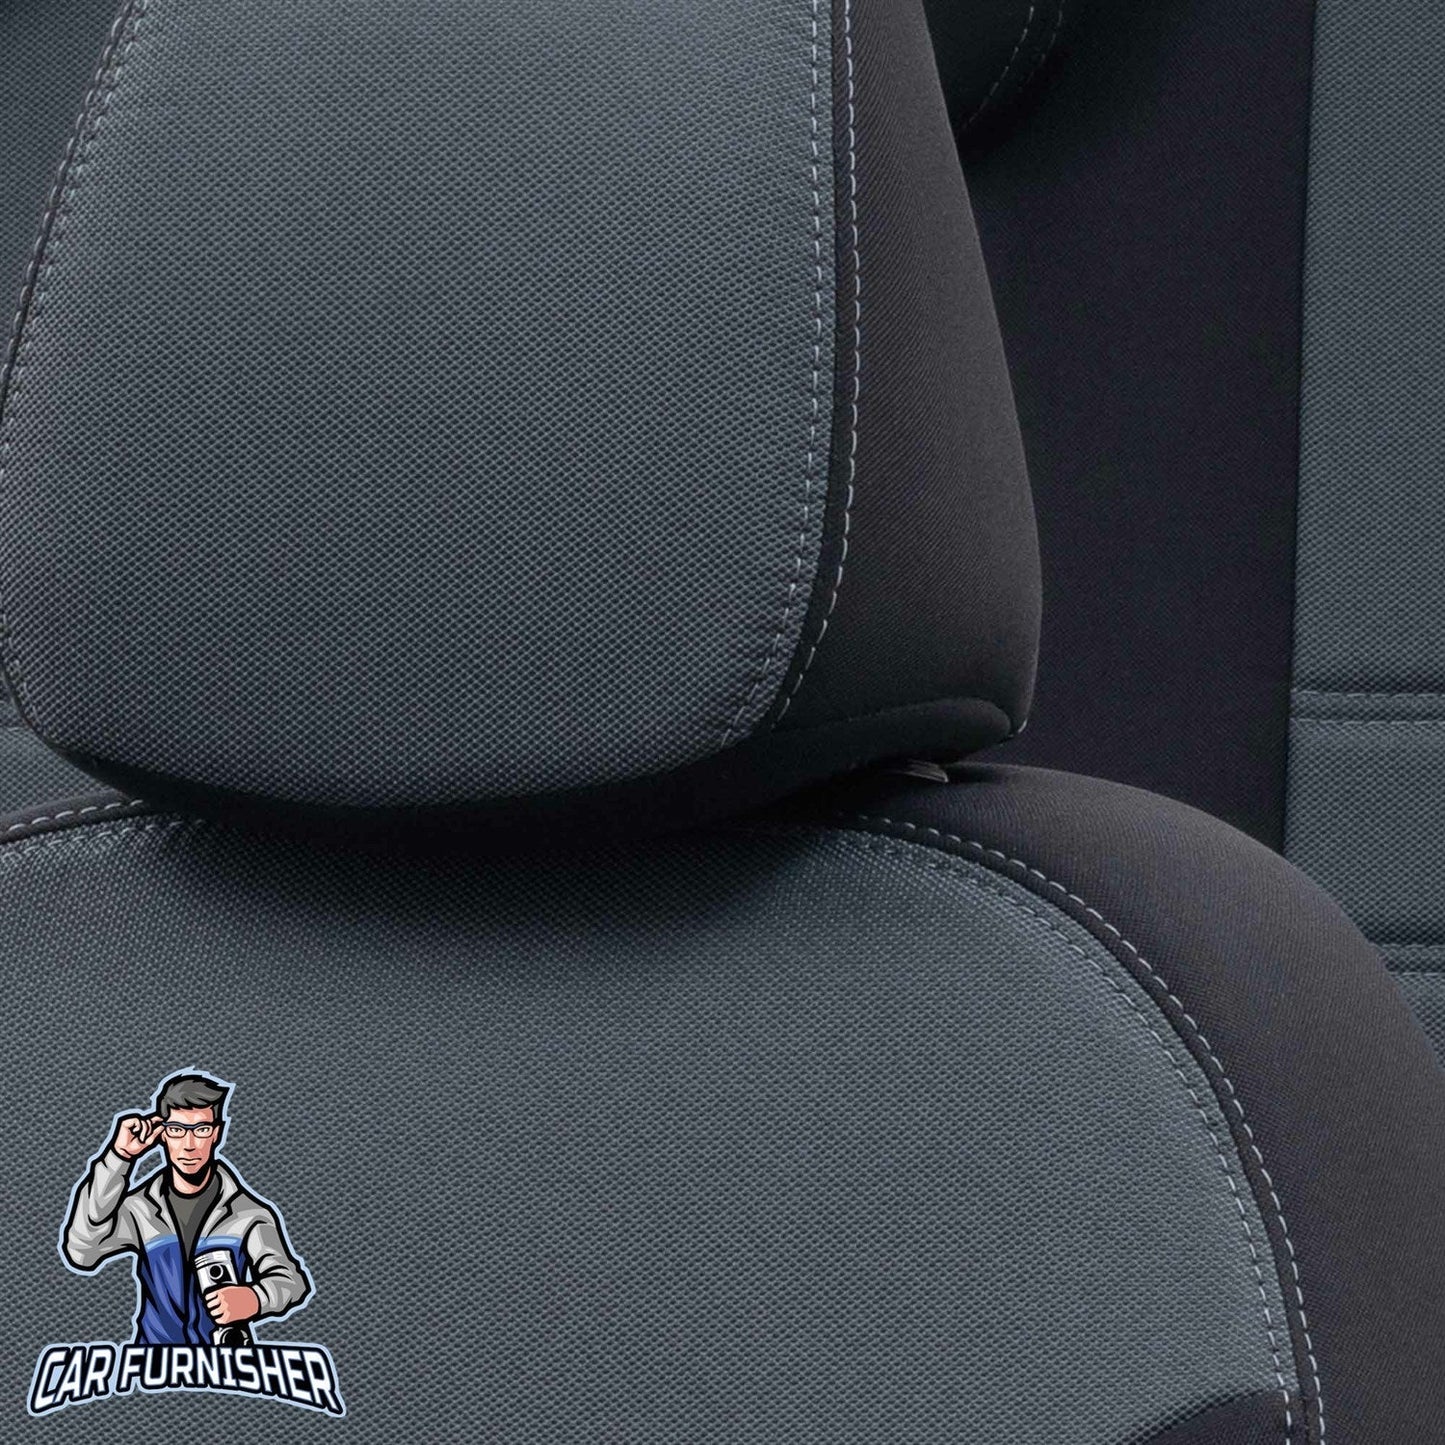 Hyundai ix35 Seat Covers Original Jacquard Design Smoked Black Jacquard Fabric